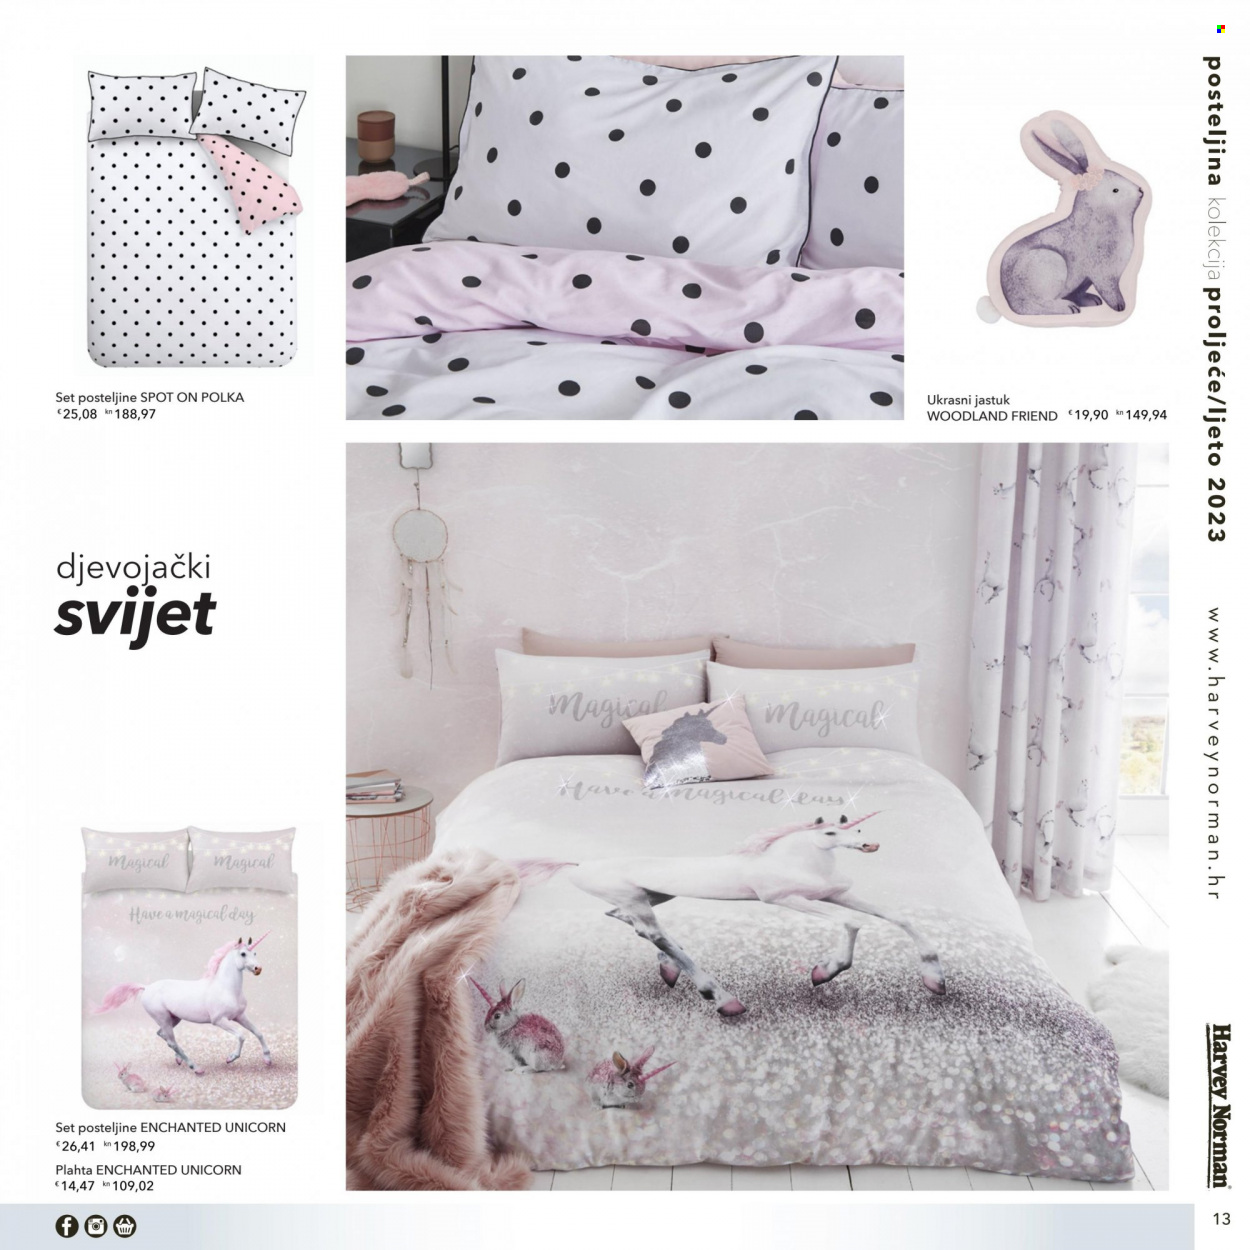 thumbnail - Harvey Norman katalog - Sniženi proizvodi - plahta, posteljina, ukrasni jastuk. Stranica 13.